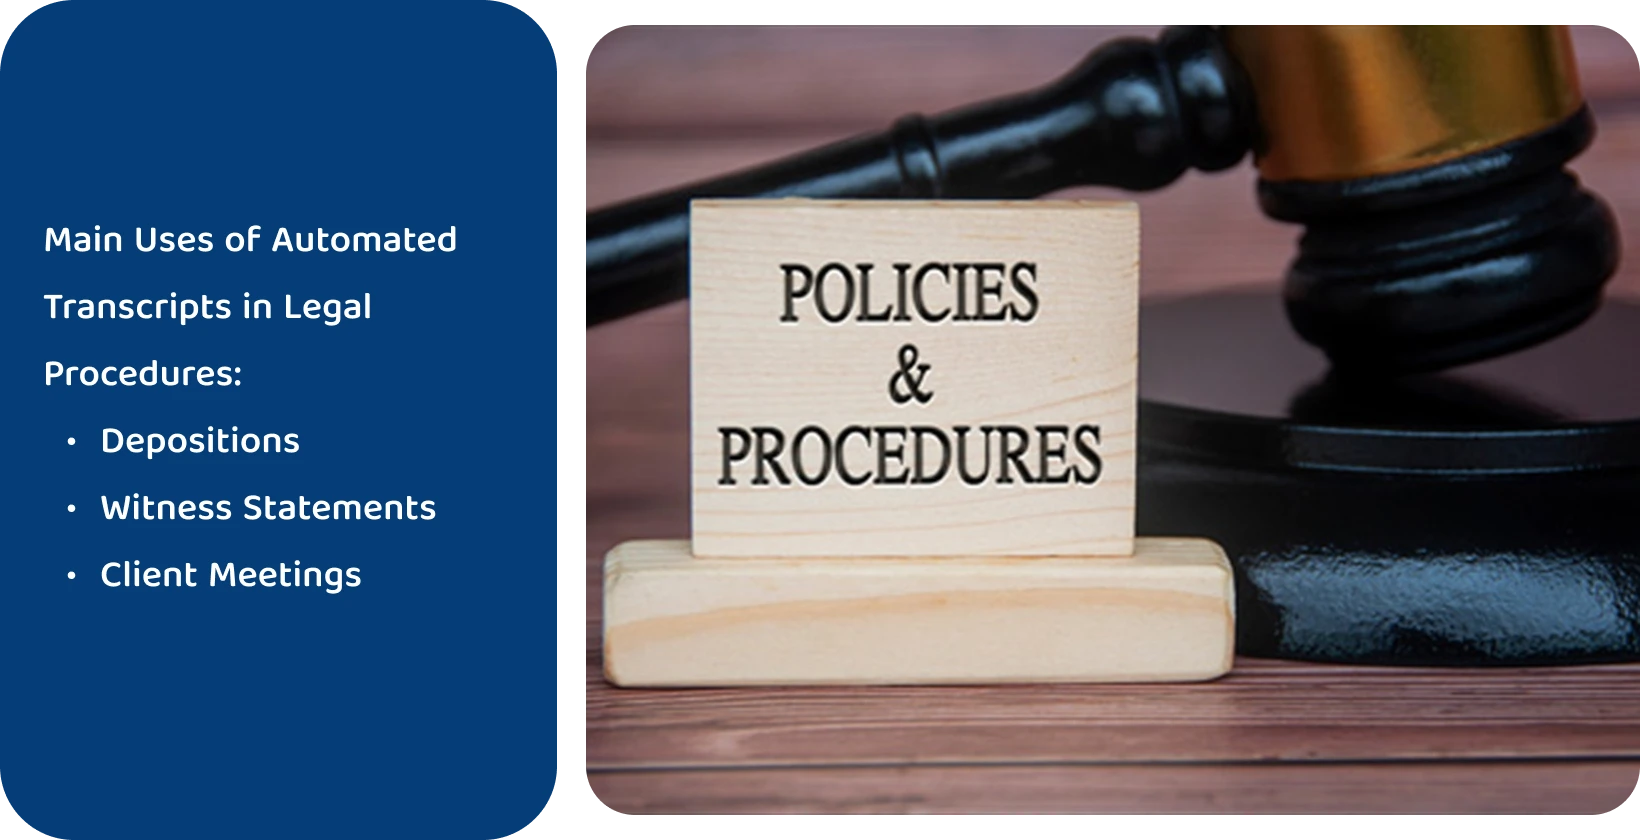 Kladívko vedle cedule "Policies & Procedures" (Zásady a postupy), která představuje právní normy, které splňují nástroje pro automatizovaný přepis.